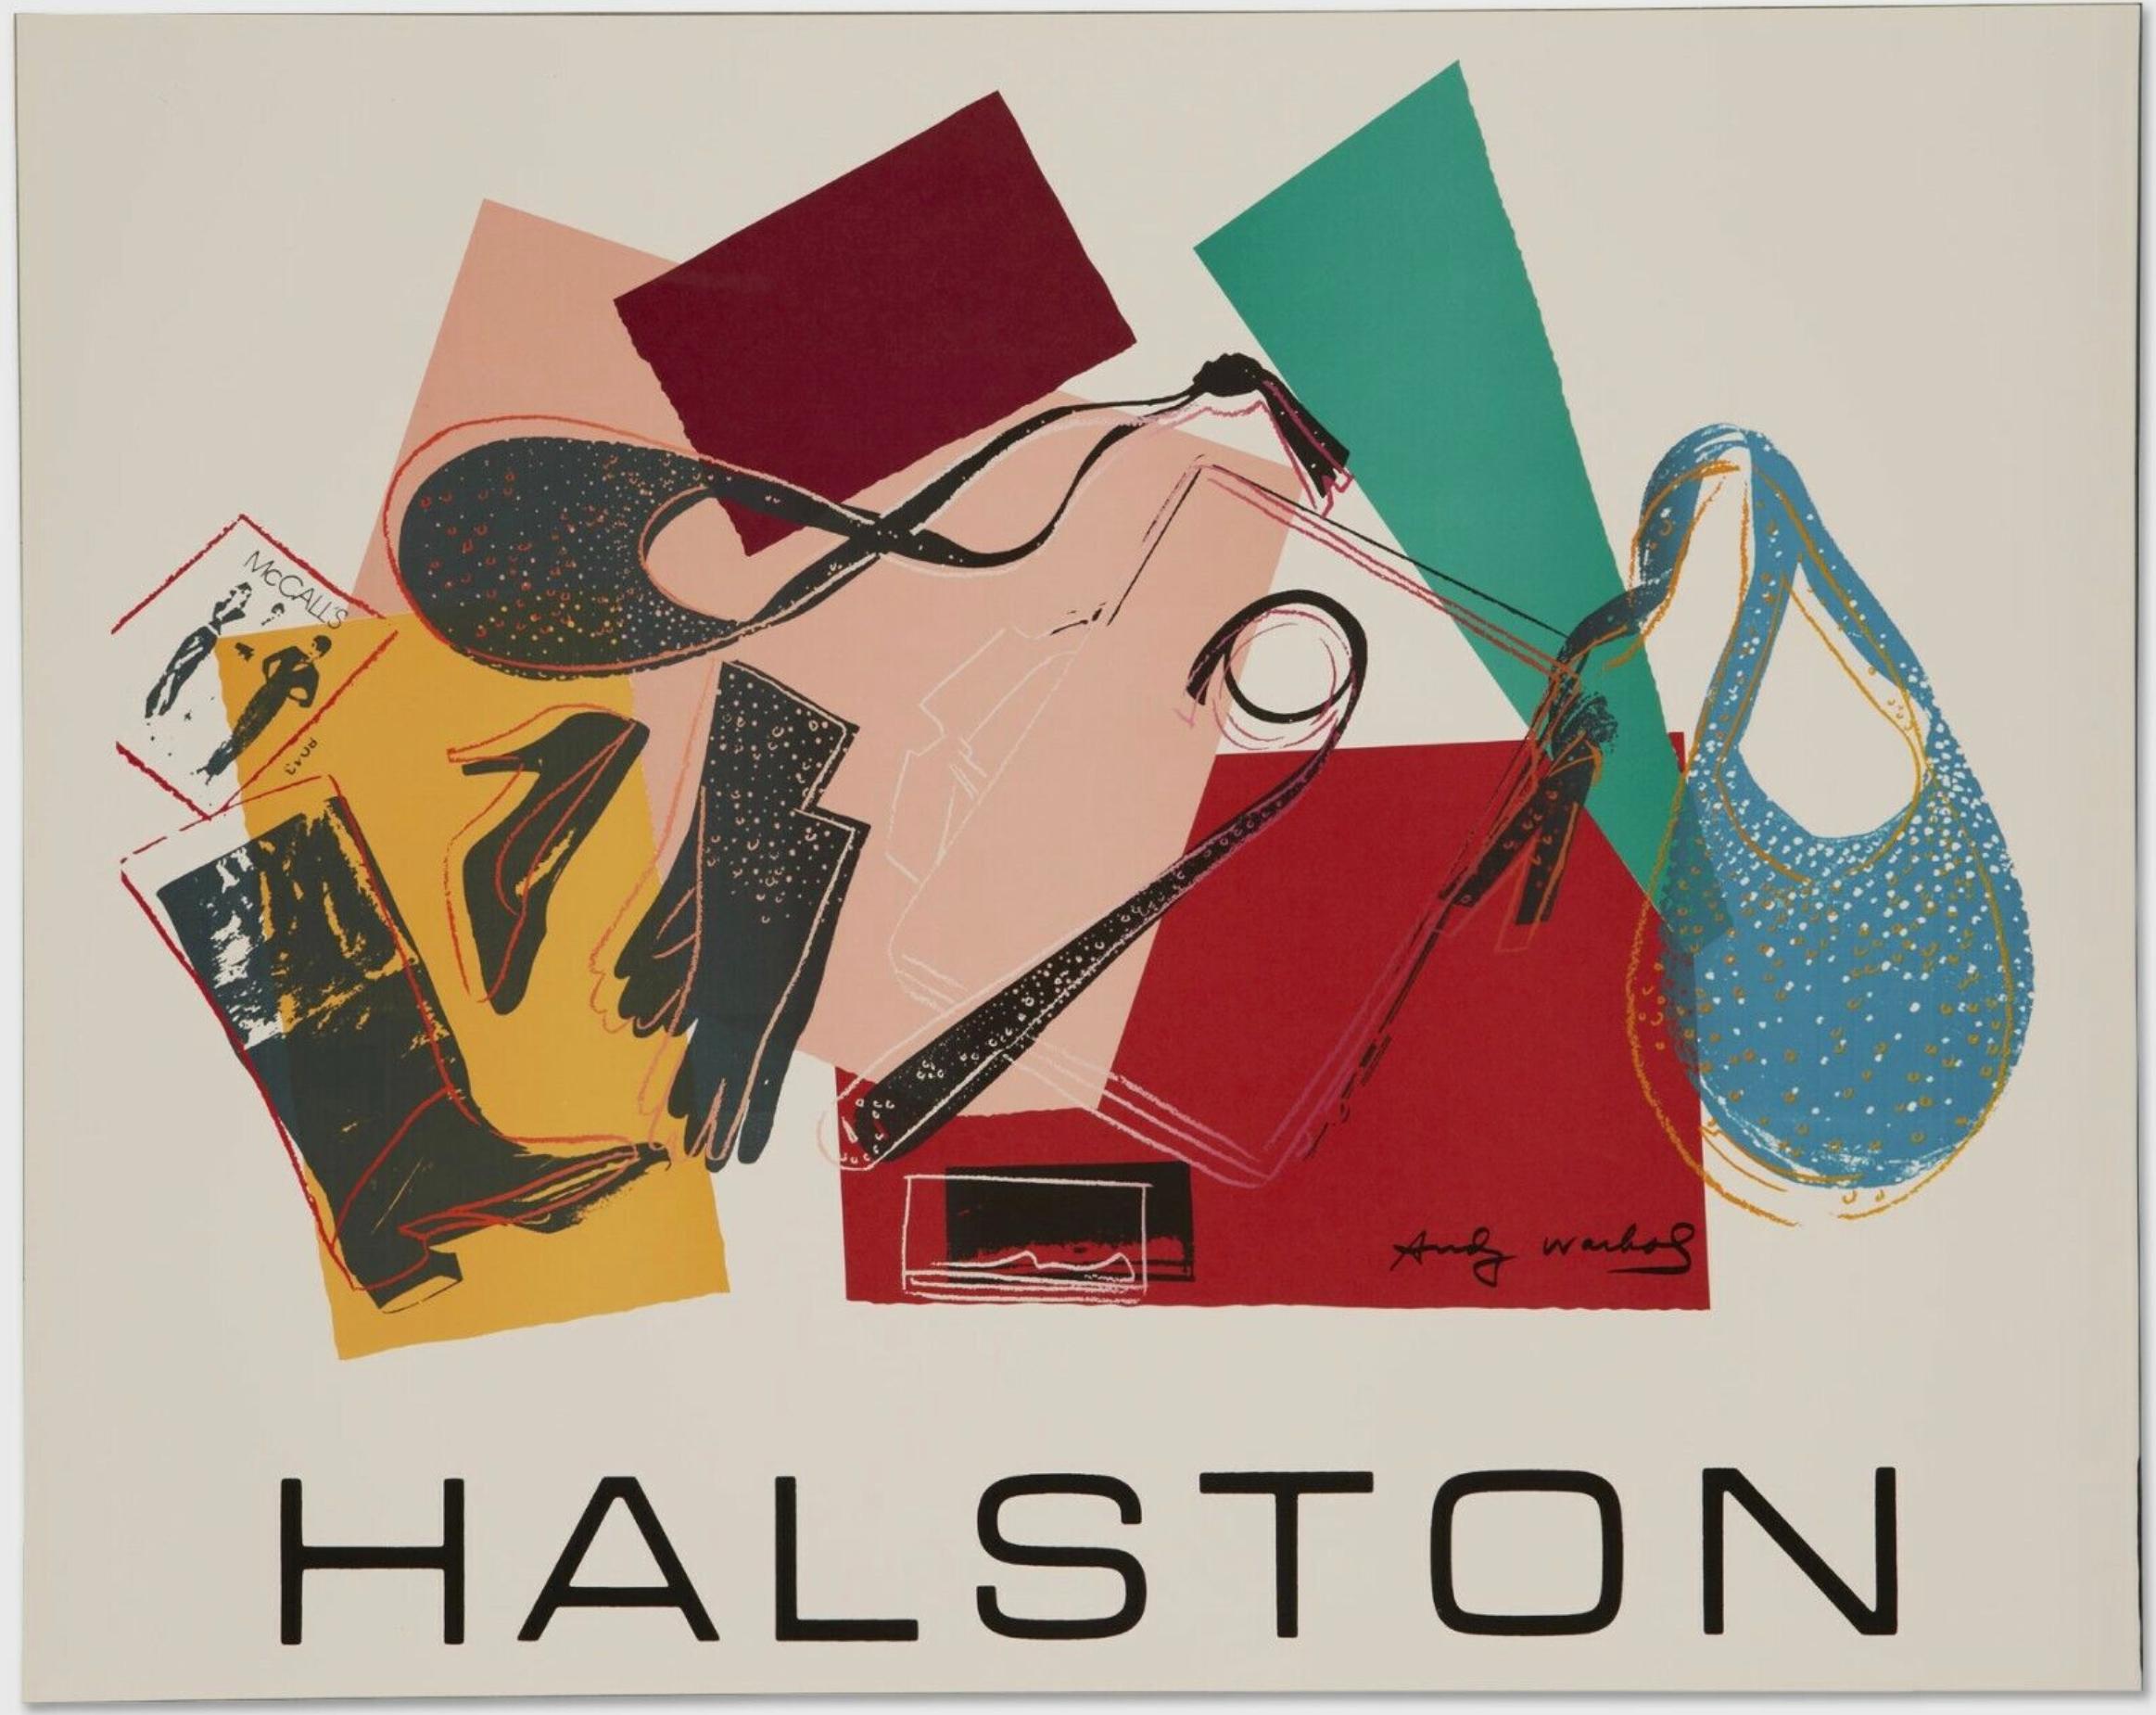 Andy Warhol – Halston Women's accessories, Werbeplakat für Werbekampagne